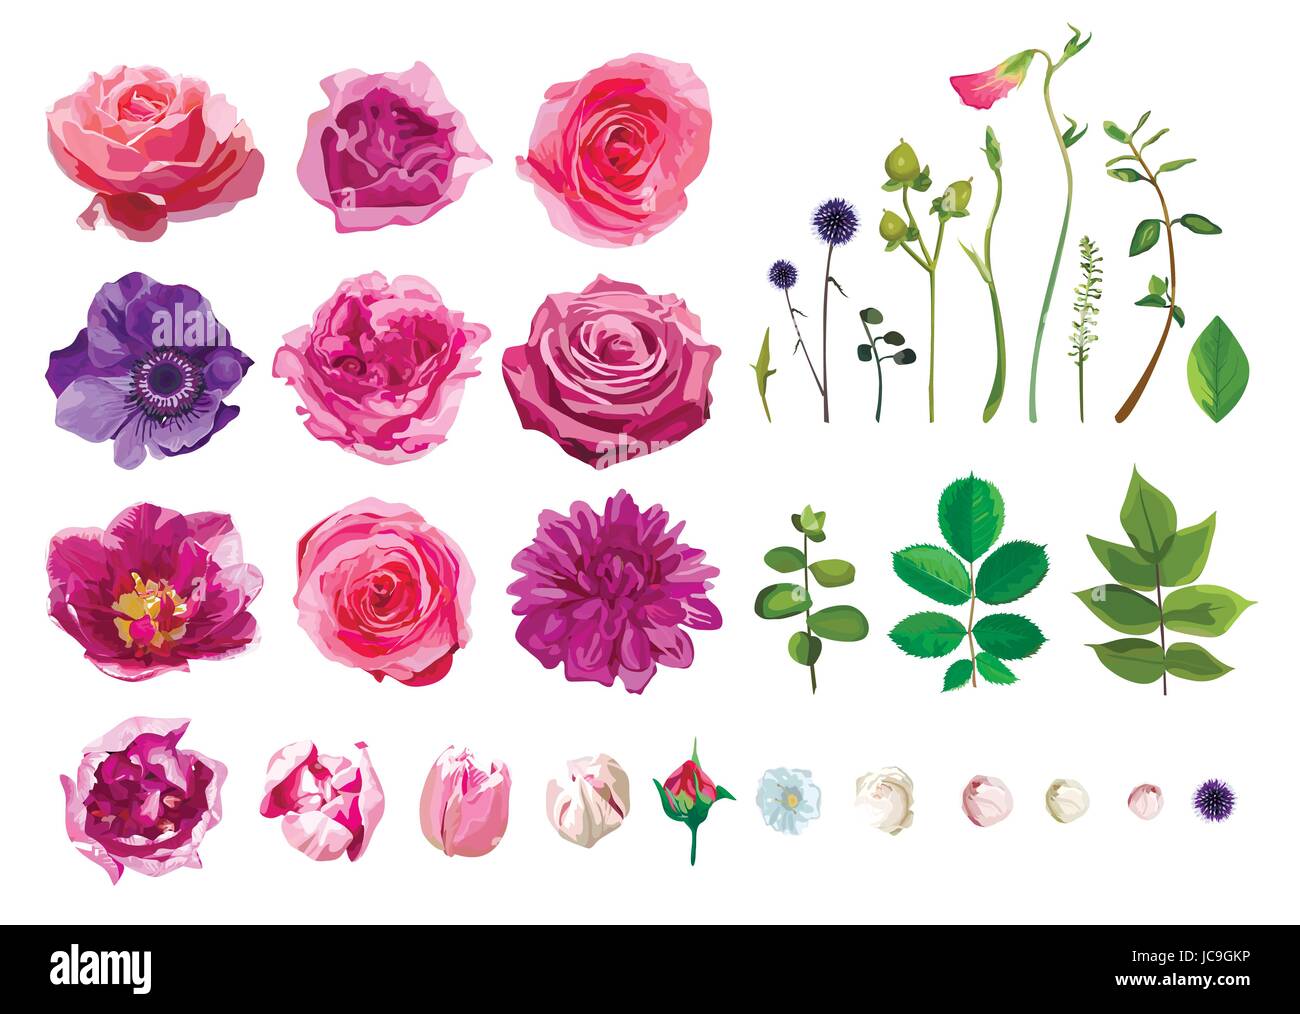 Vektor große Auswahl von verschiedenen Blumen Blätter einschließlich Rose, Dahlia Daisy Anemone Tulip isoliert auf weißem Hintergrund. Rosa, lila grün Aquarell Stock Vektor